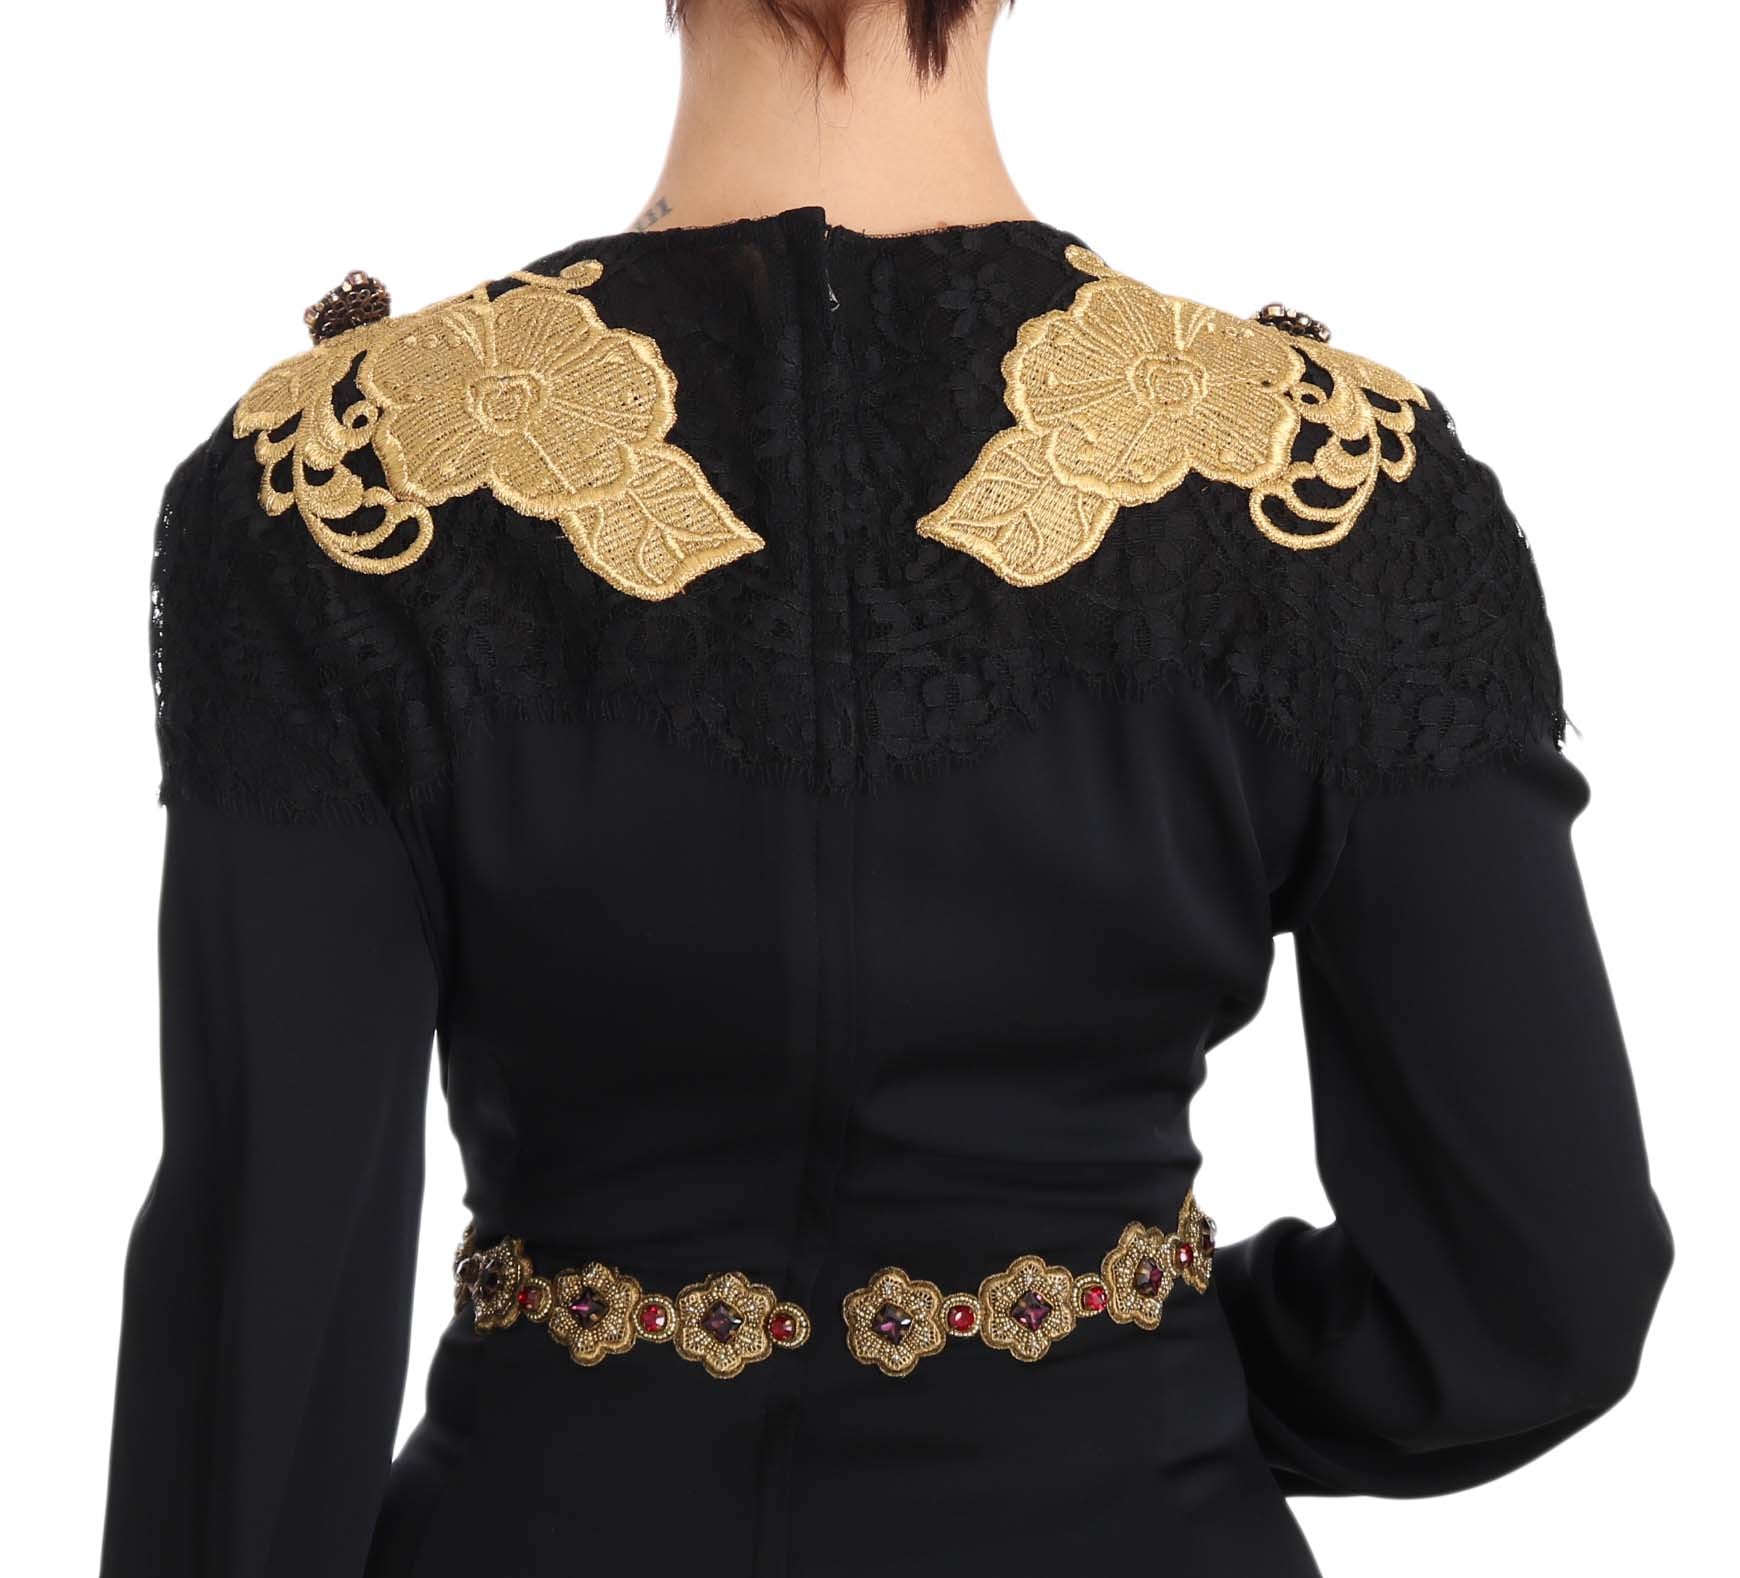 Dolce & Gabbana – Elegantes schwarzes Maxikleid mit goldenen Details